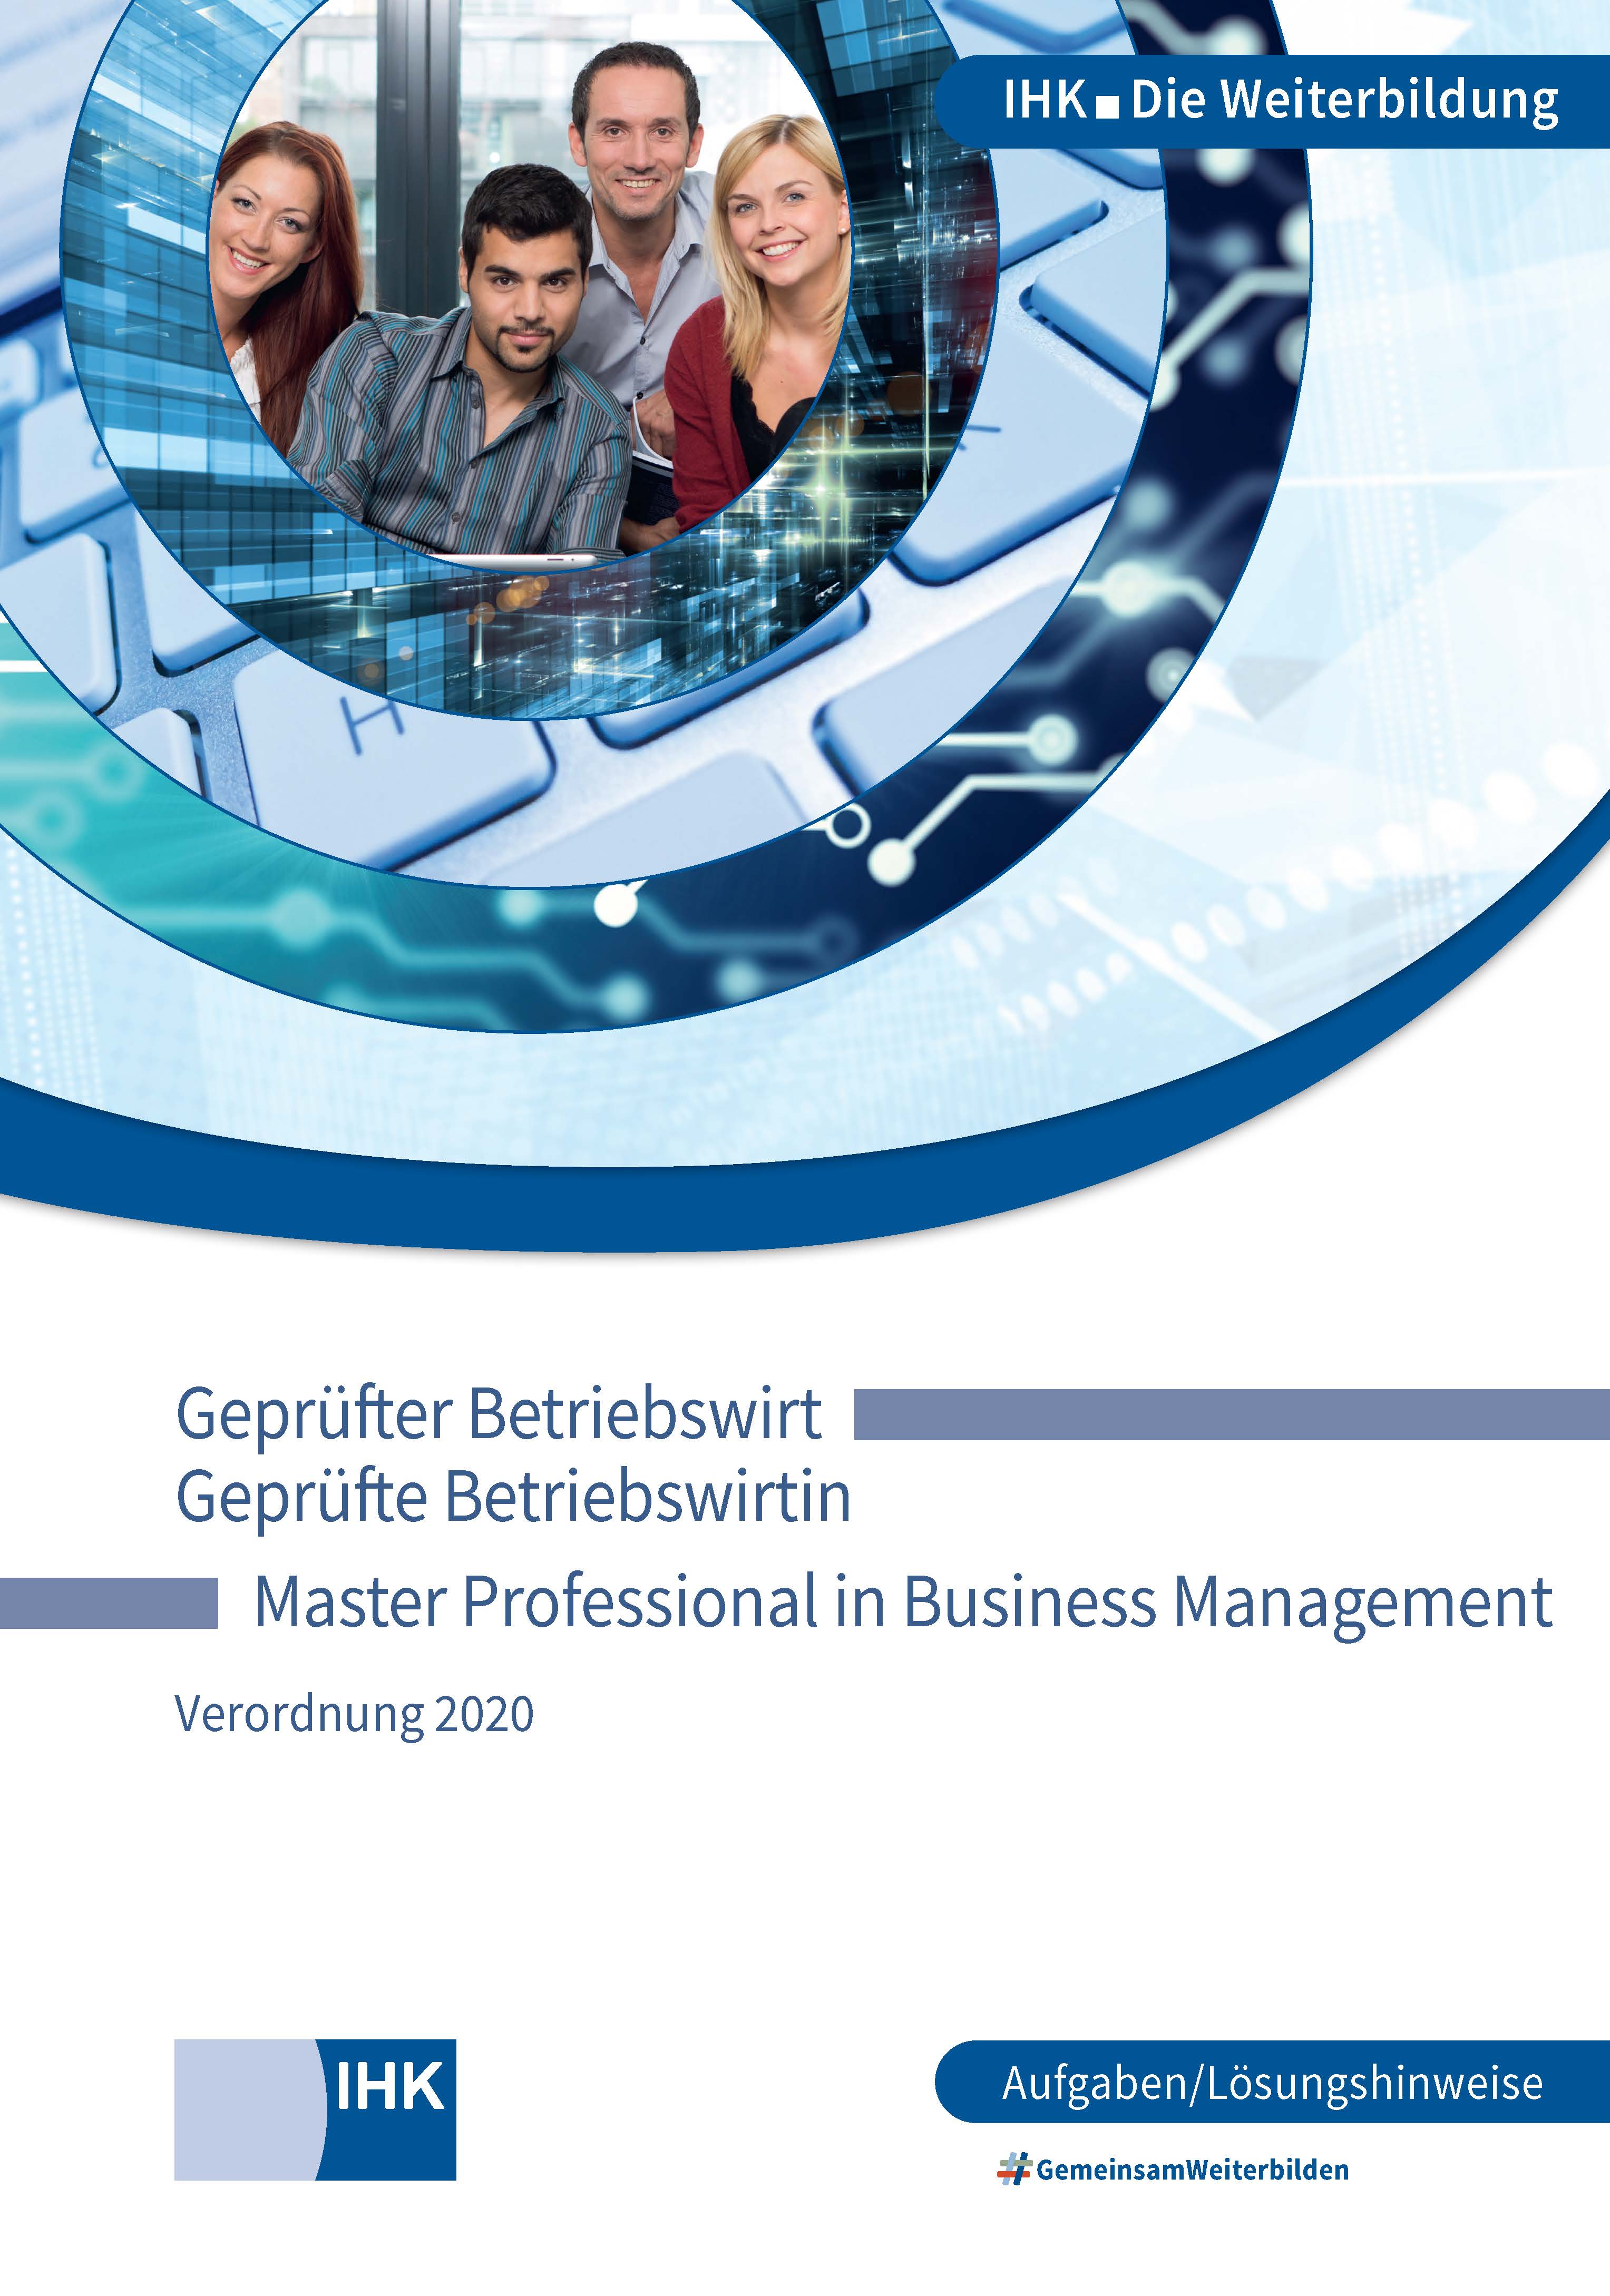 Geprüfte Betriebswirte – Master Professional in Business Management